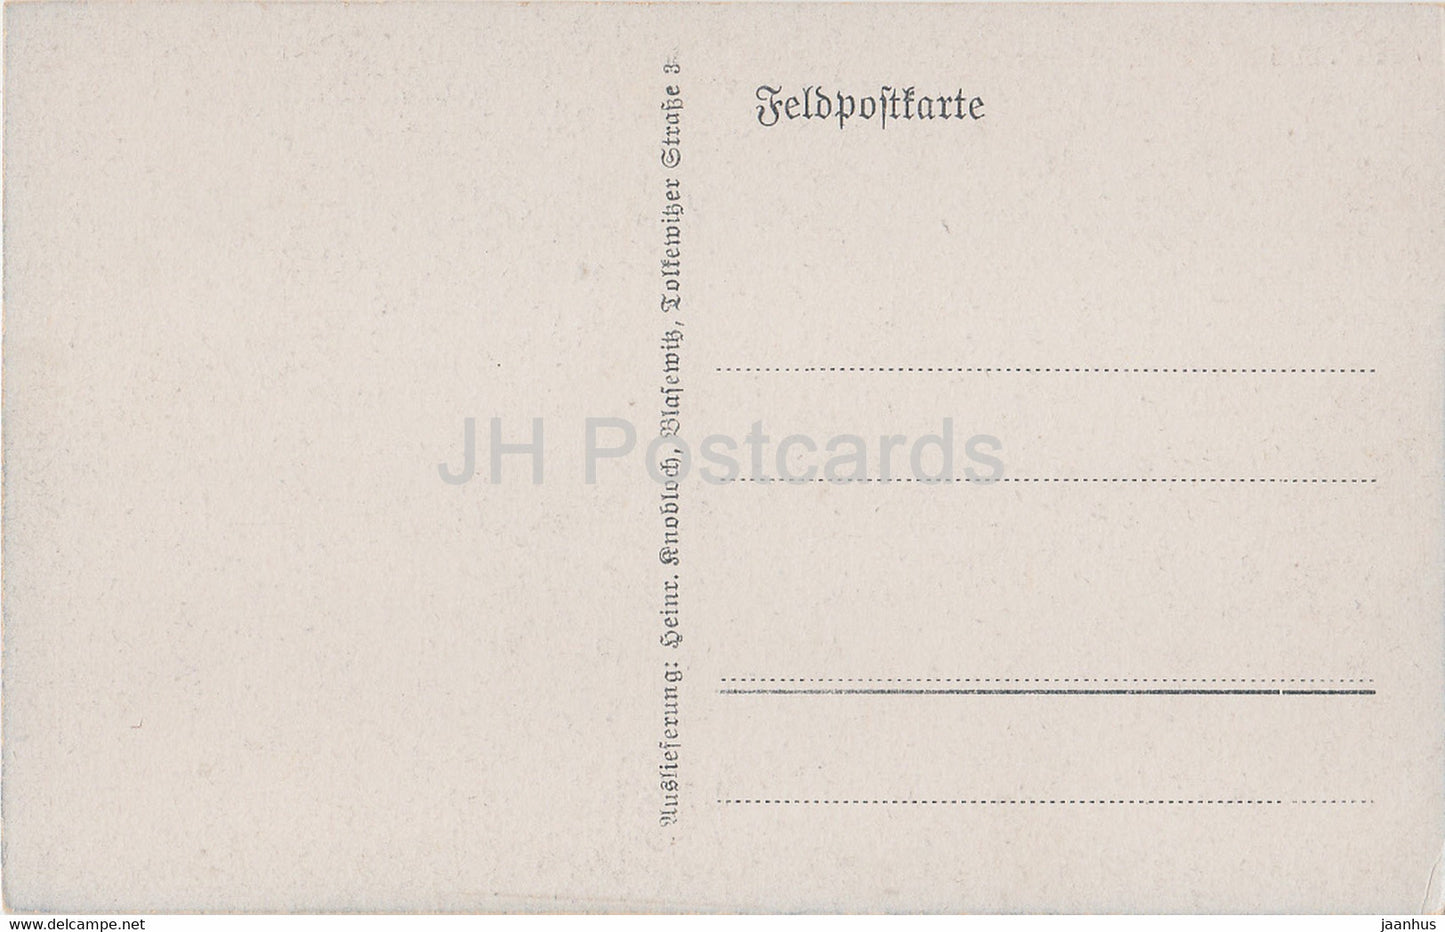 Peronne - Markt und Rathaus - Feldpostkarte - Militär - Pferd - 208 - alte Postkarte - Frankreich - gebraucht